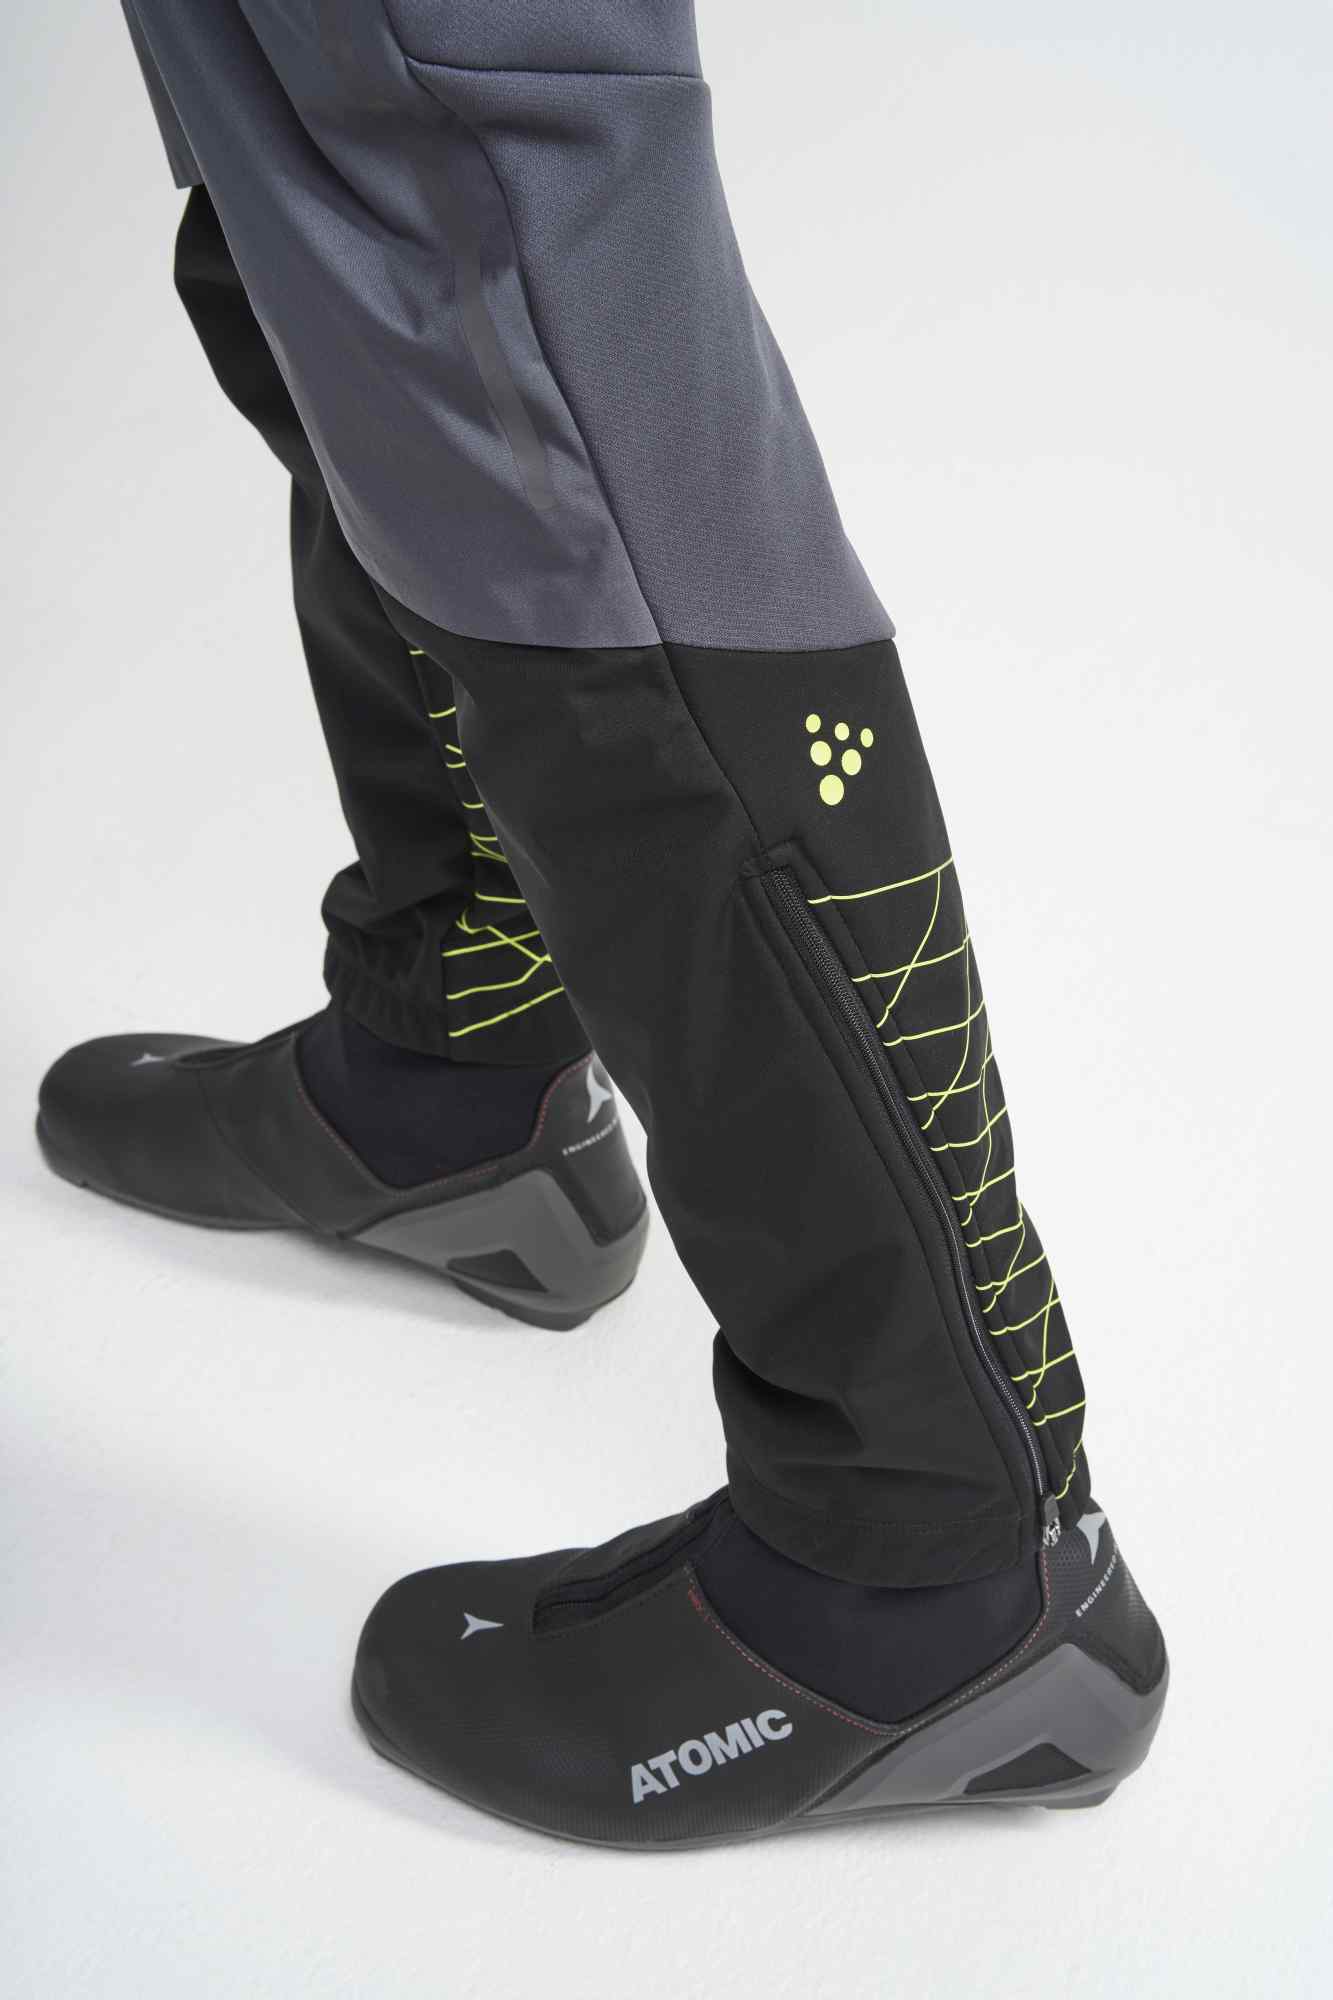 Pánské funkční kalhoty na běžecké lyžování